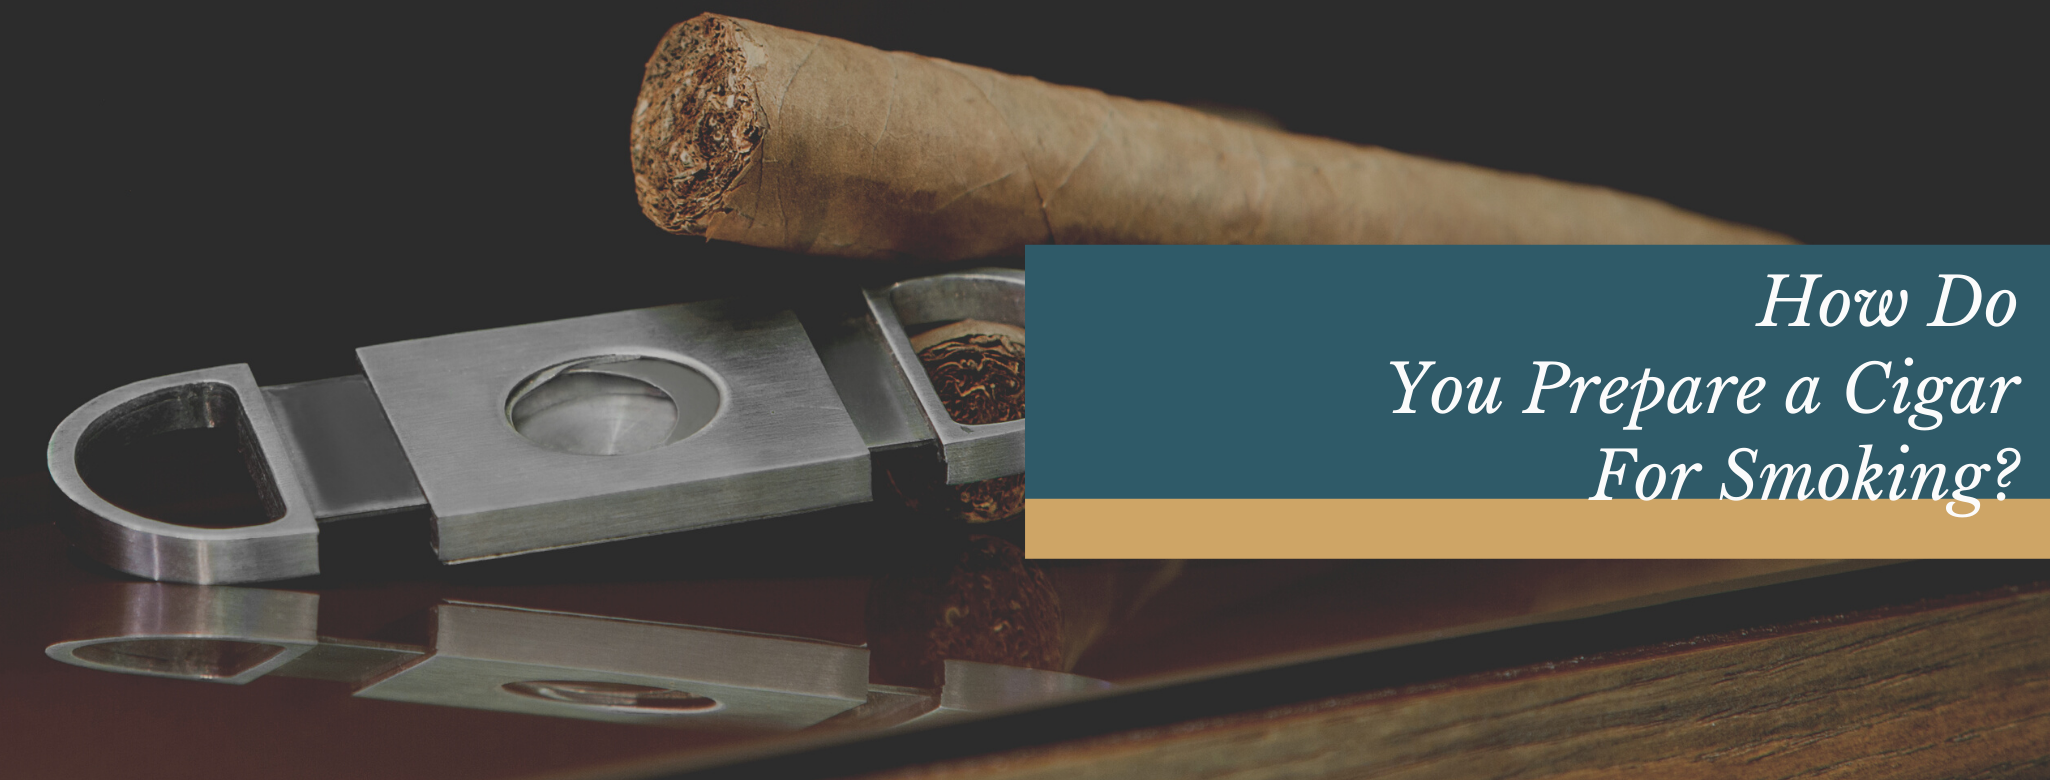 reads: How do you prepare a cigar for smoking?